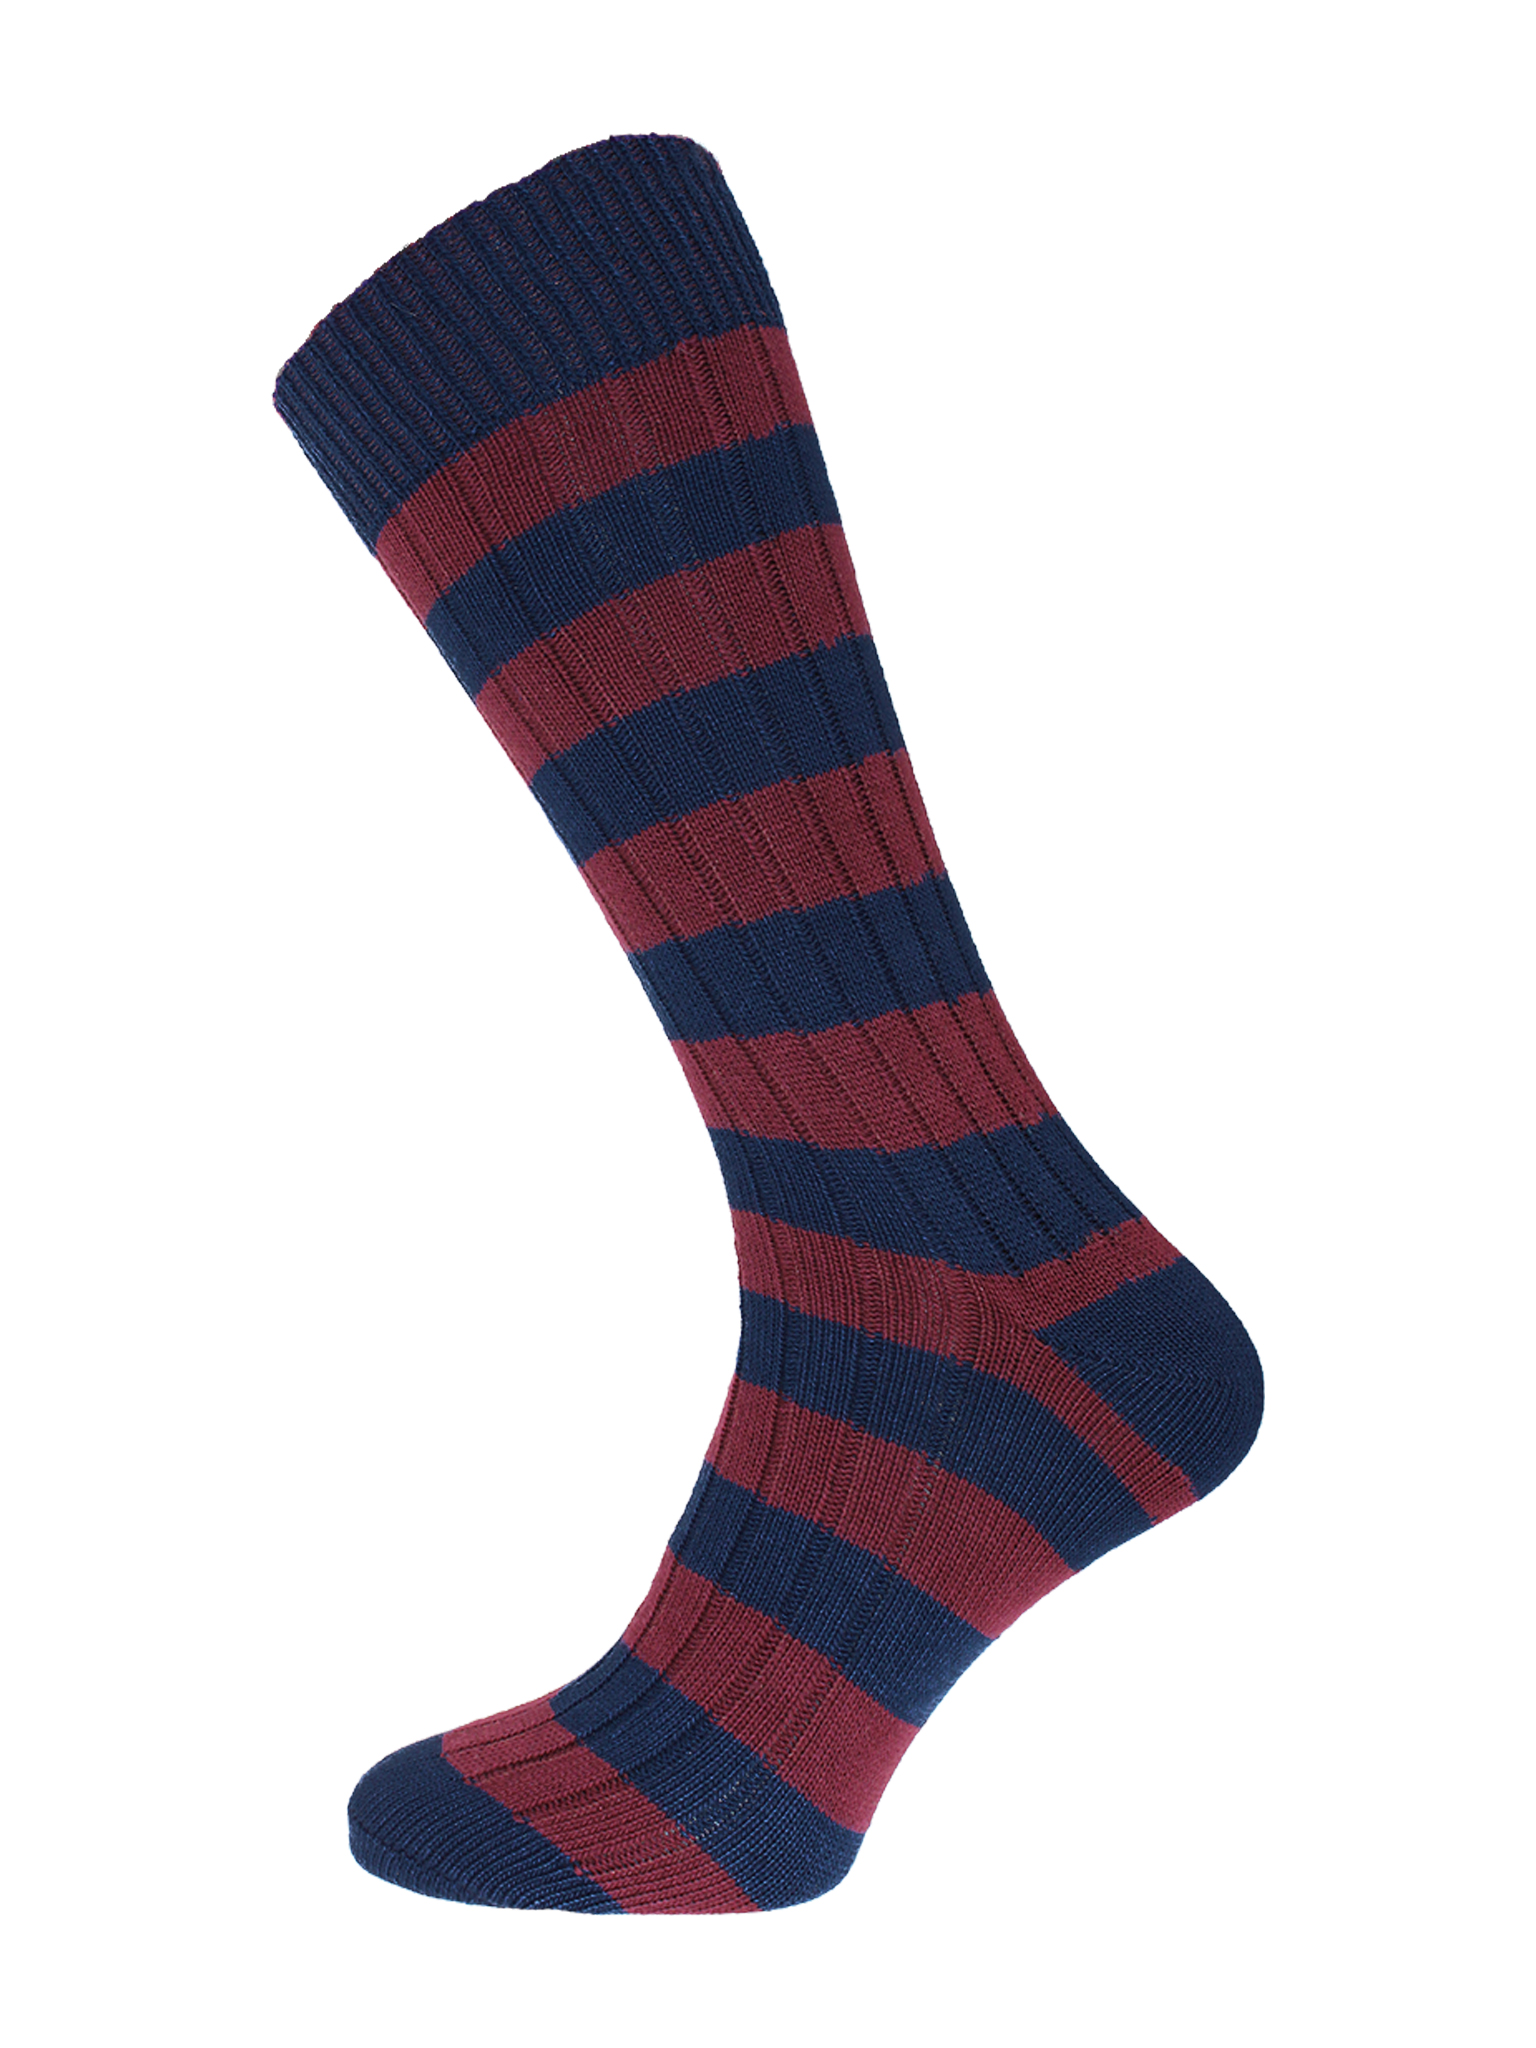 Weekender Socks Hoop Navy/Burgundy